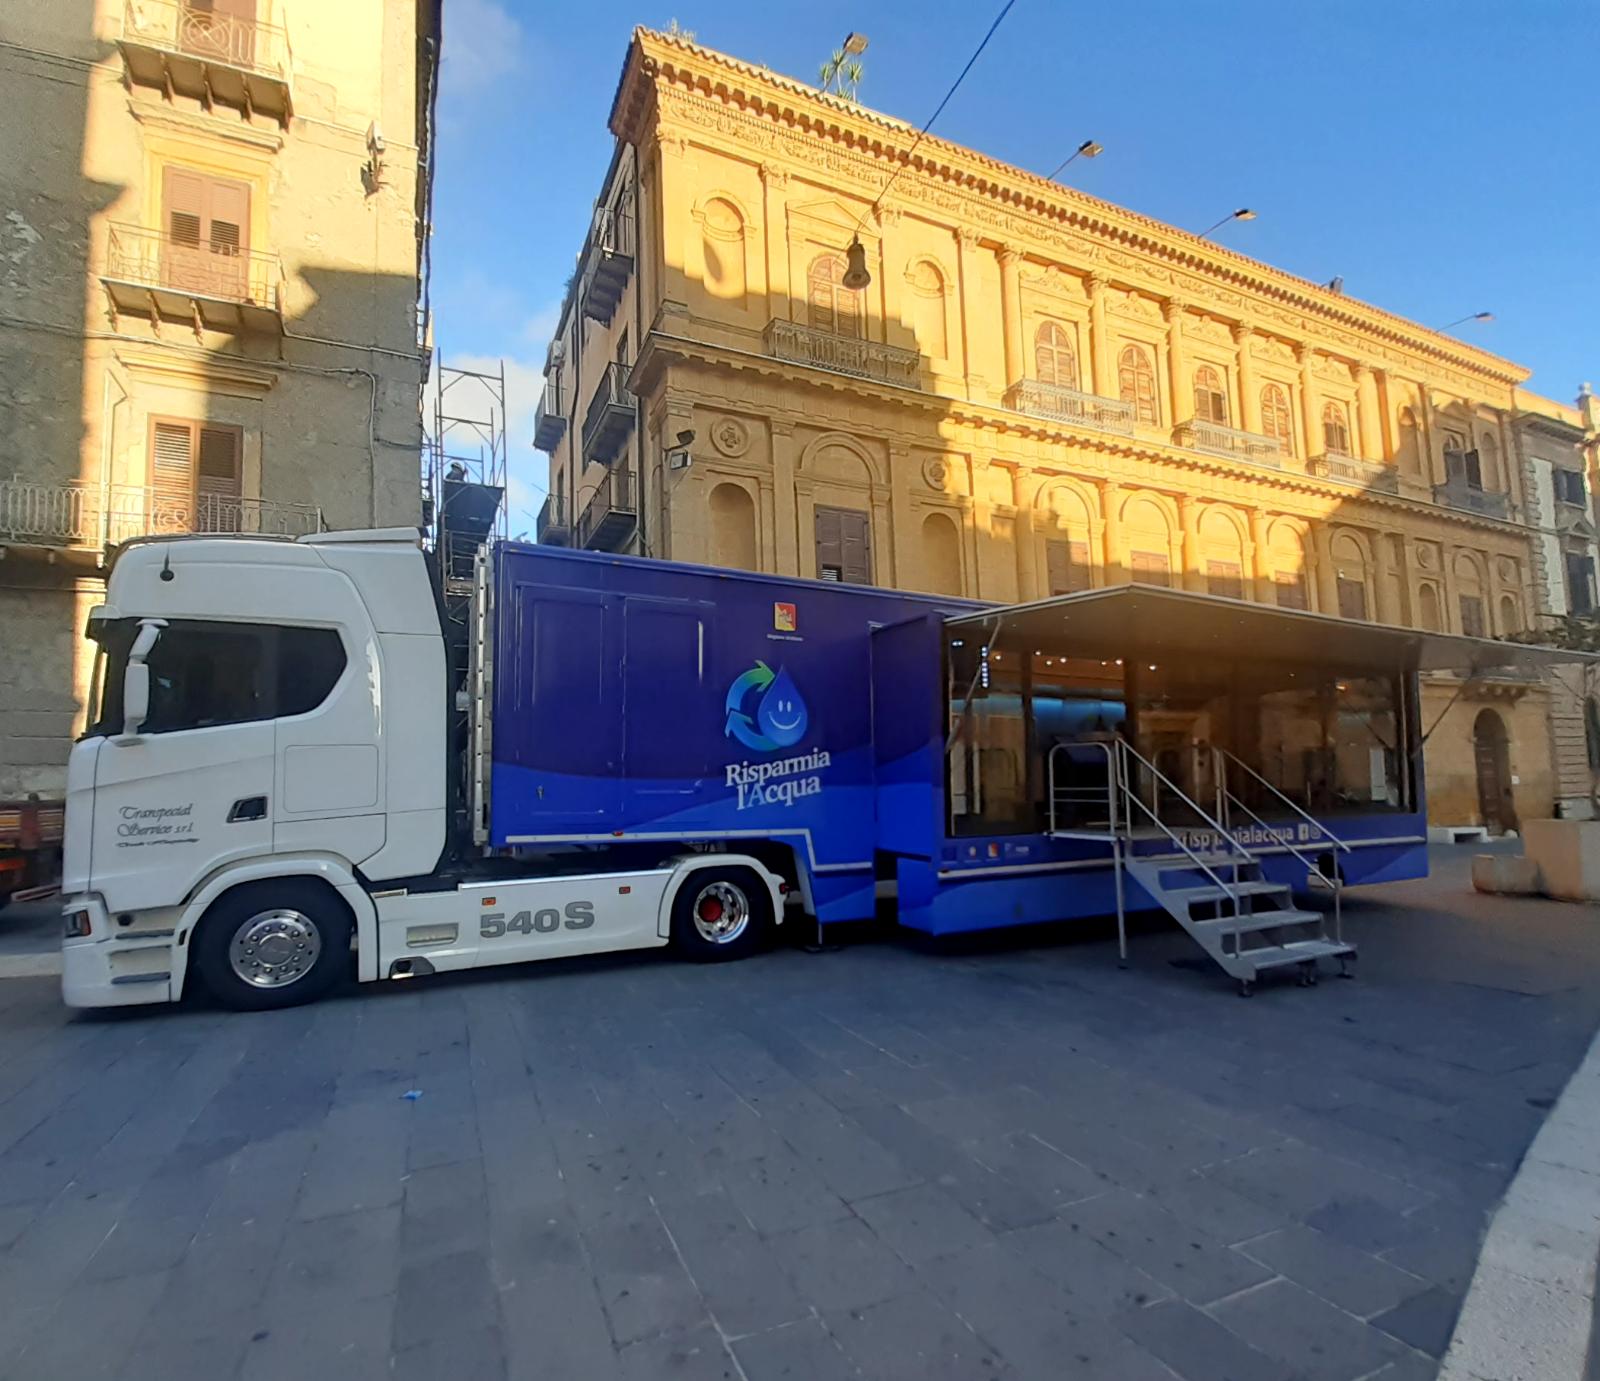 Caltanissetta accoglie il truck di “Risparmialacqua”: fino a martedì giochi interattivi e tecnologia VR (VIDEO)